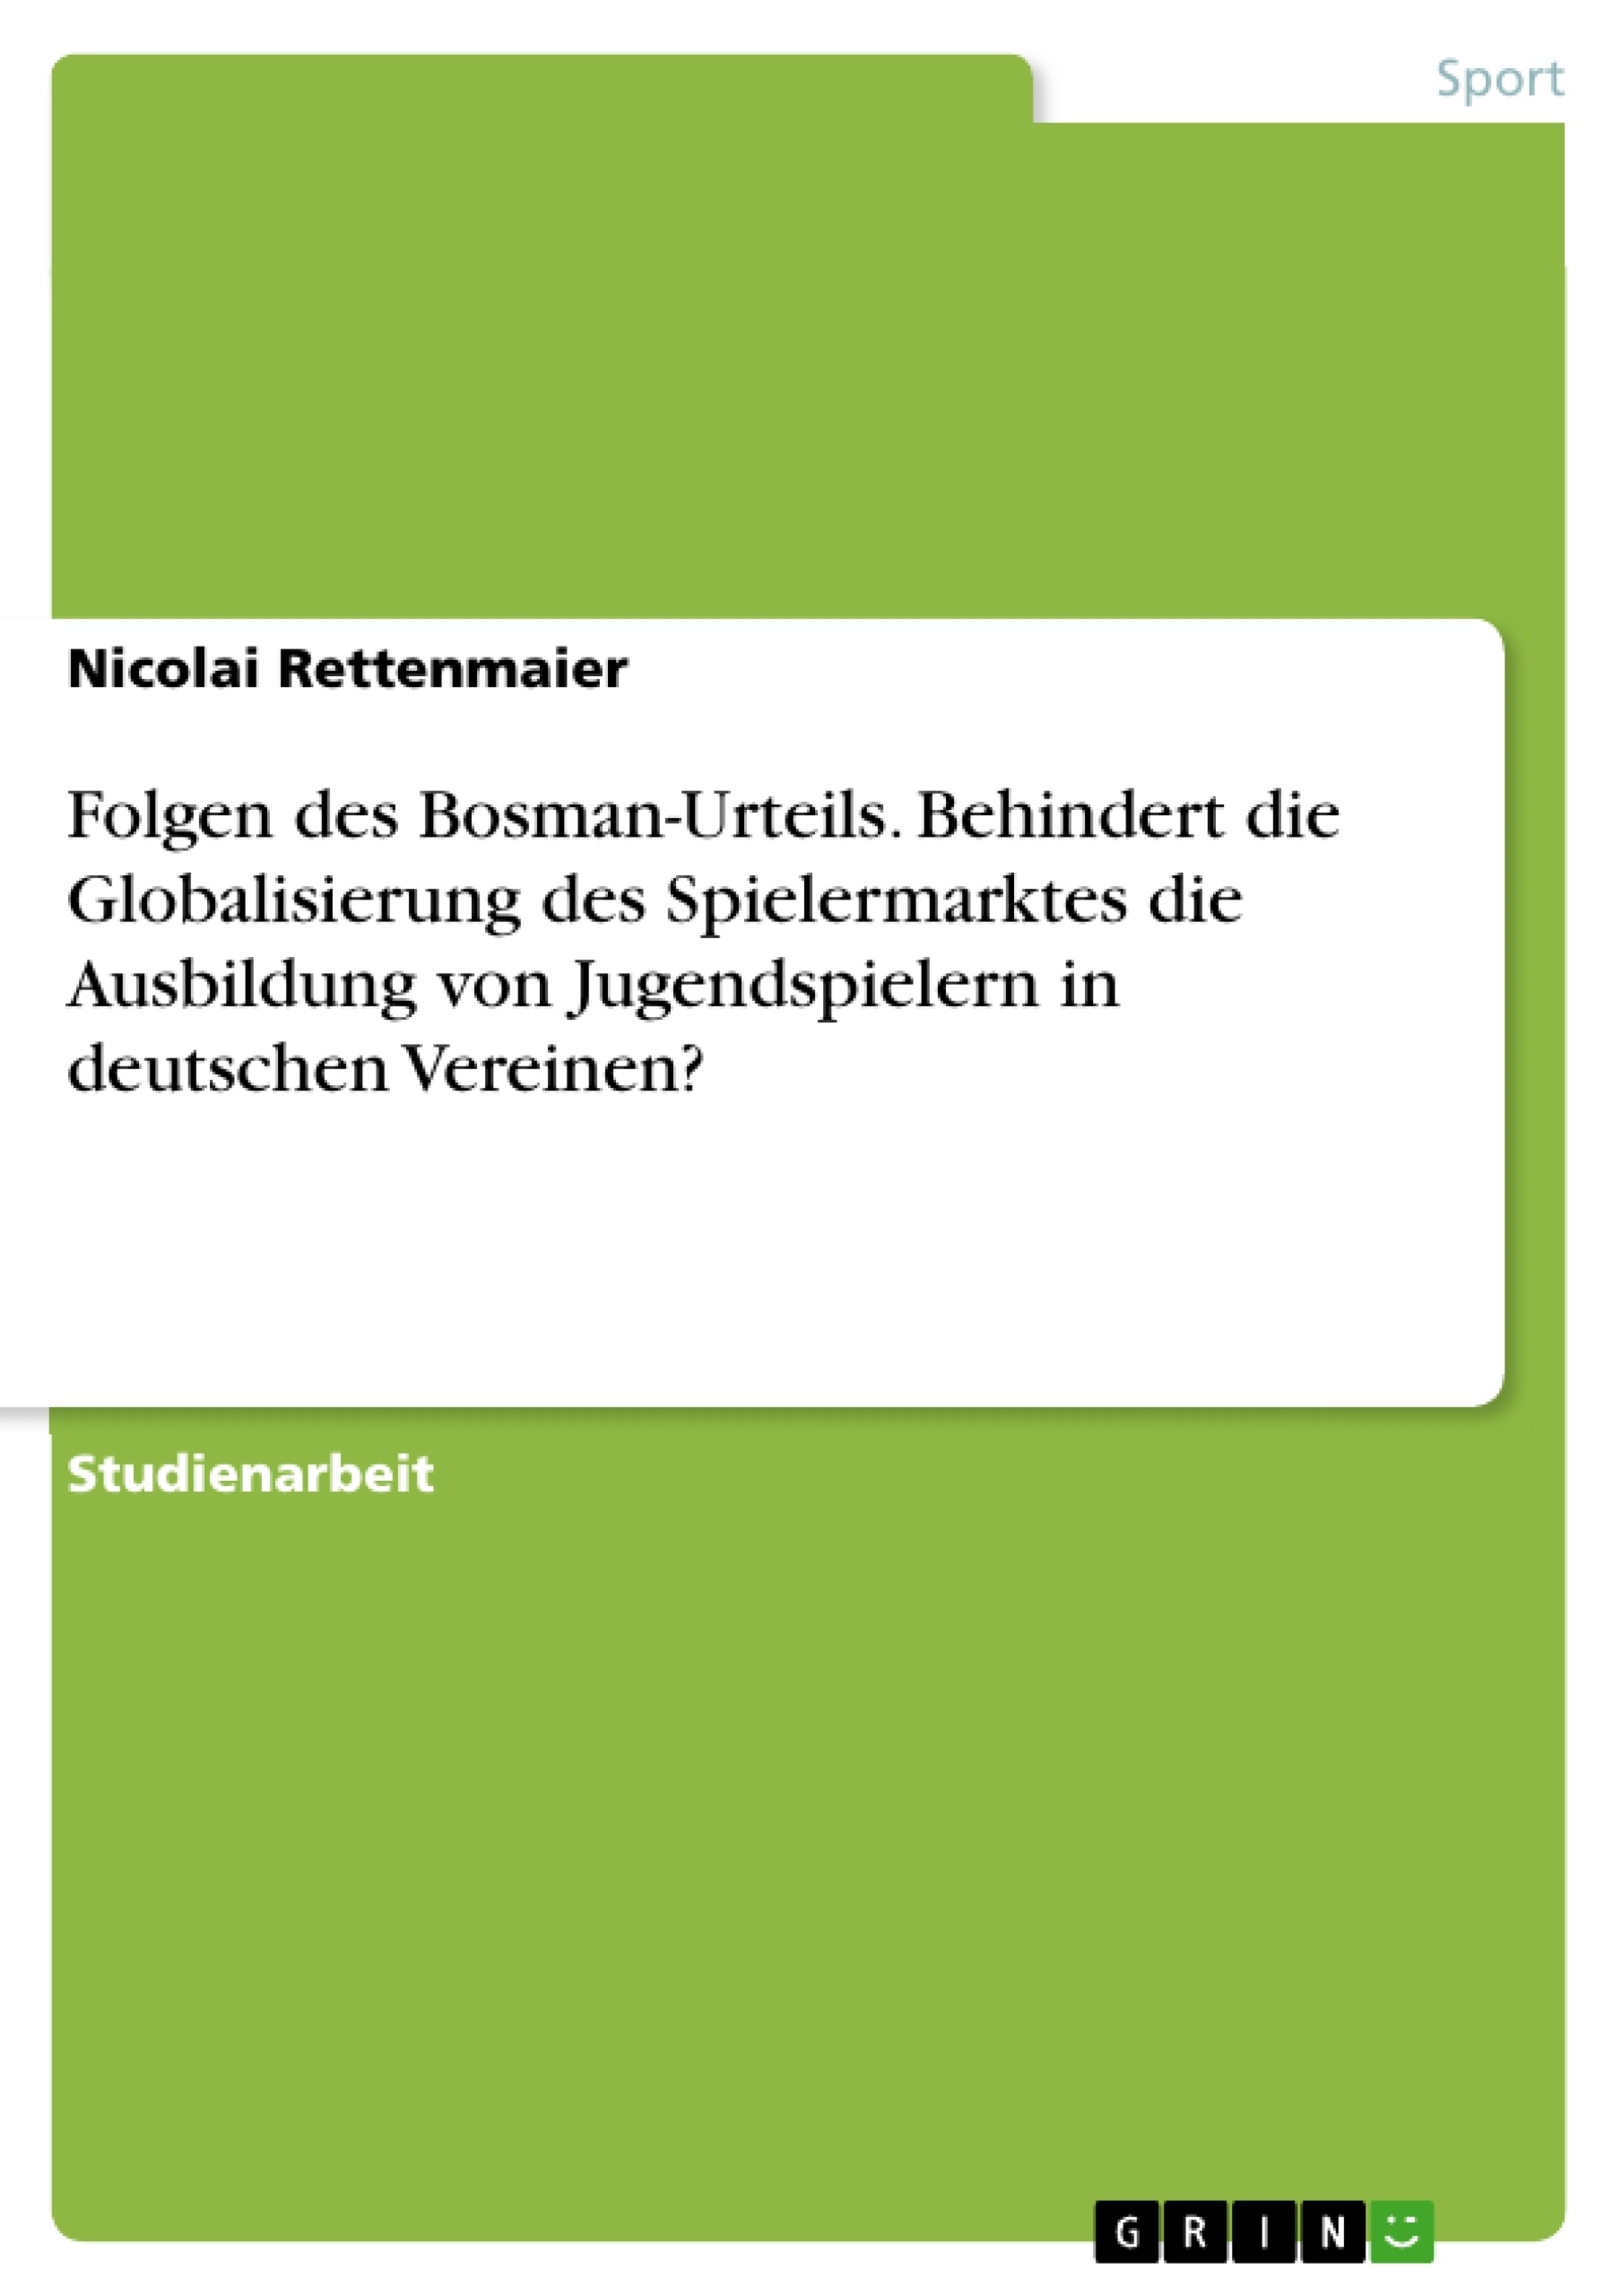 Titel: Folgen des Bosman-Urteils. Behindert die Globalisierung des Spielermarktes die Ausbildung von Jugendspielern in deutschen Vereinen?